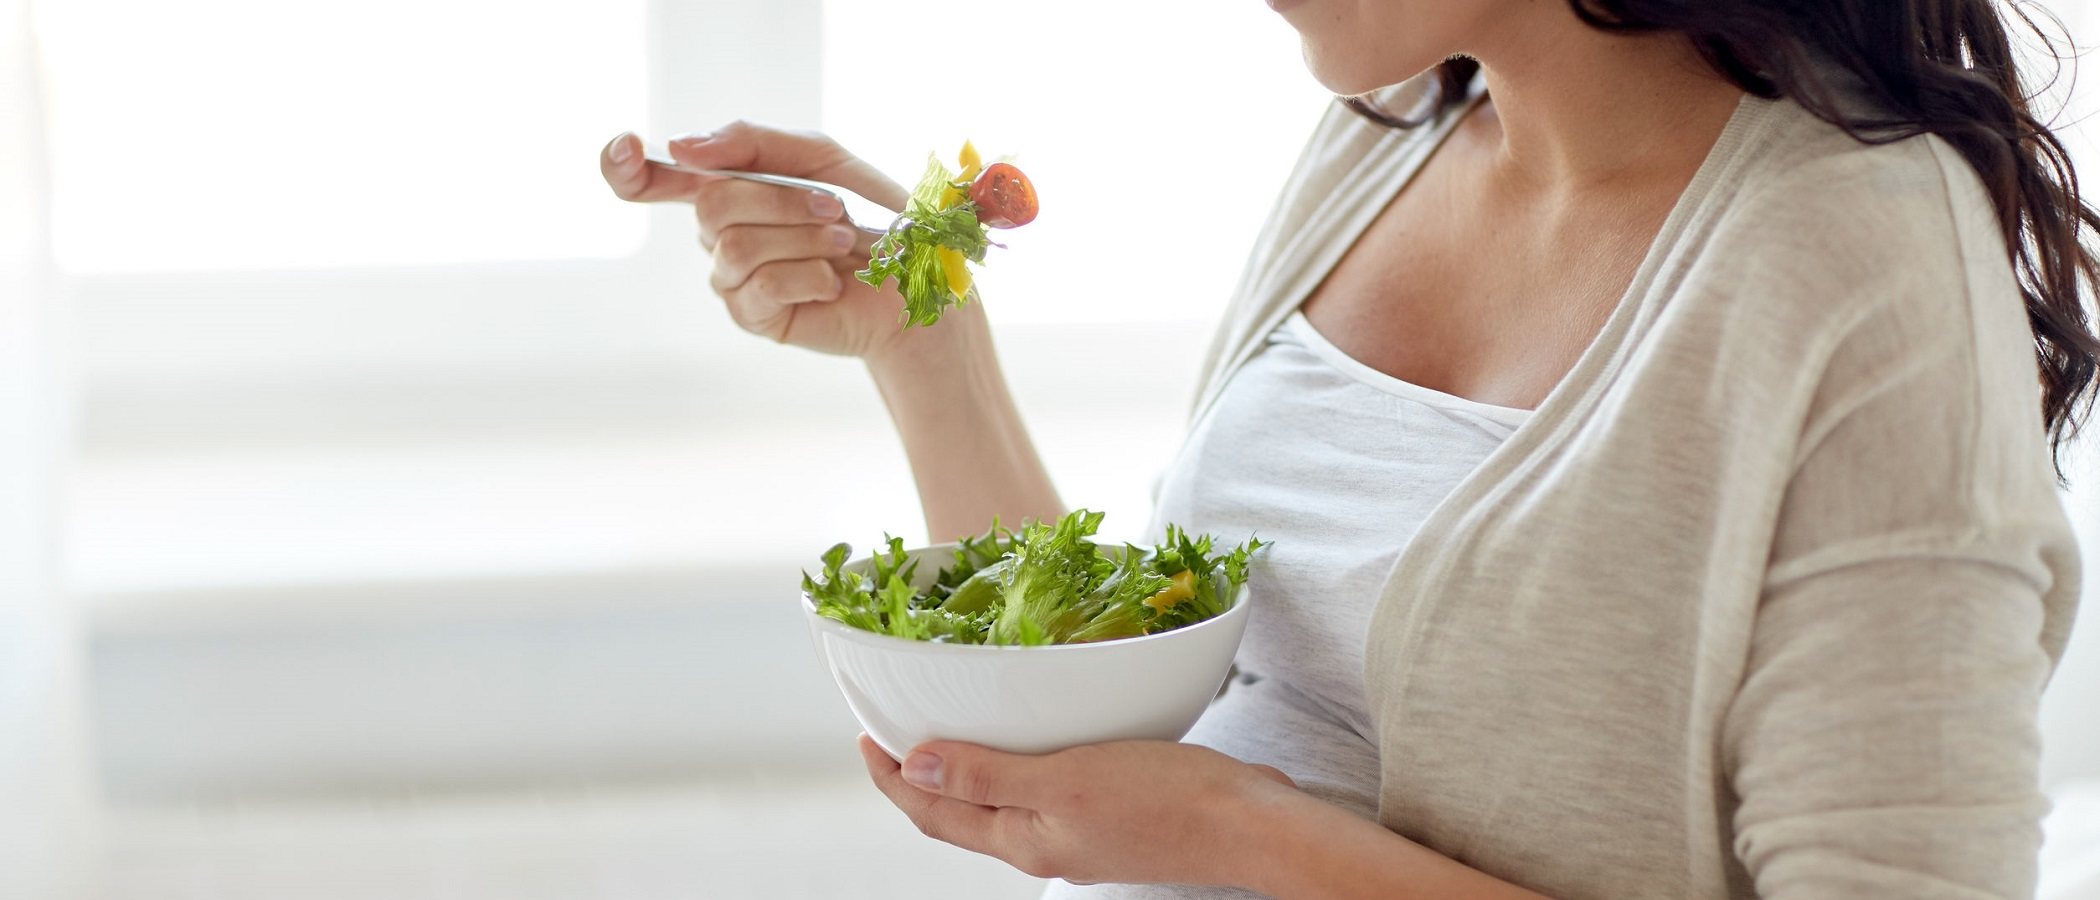 La importancia de una buena alimentación en el embarazo